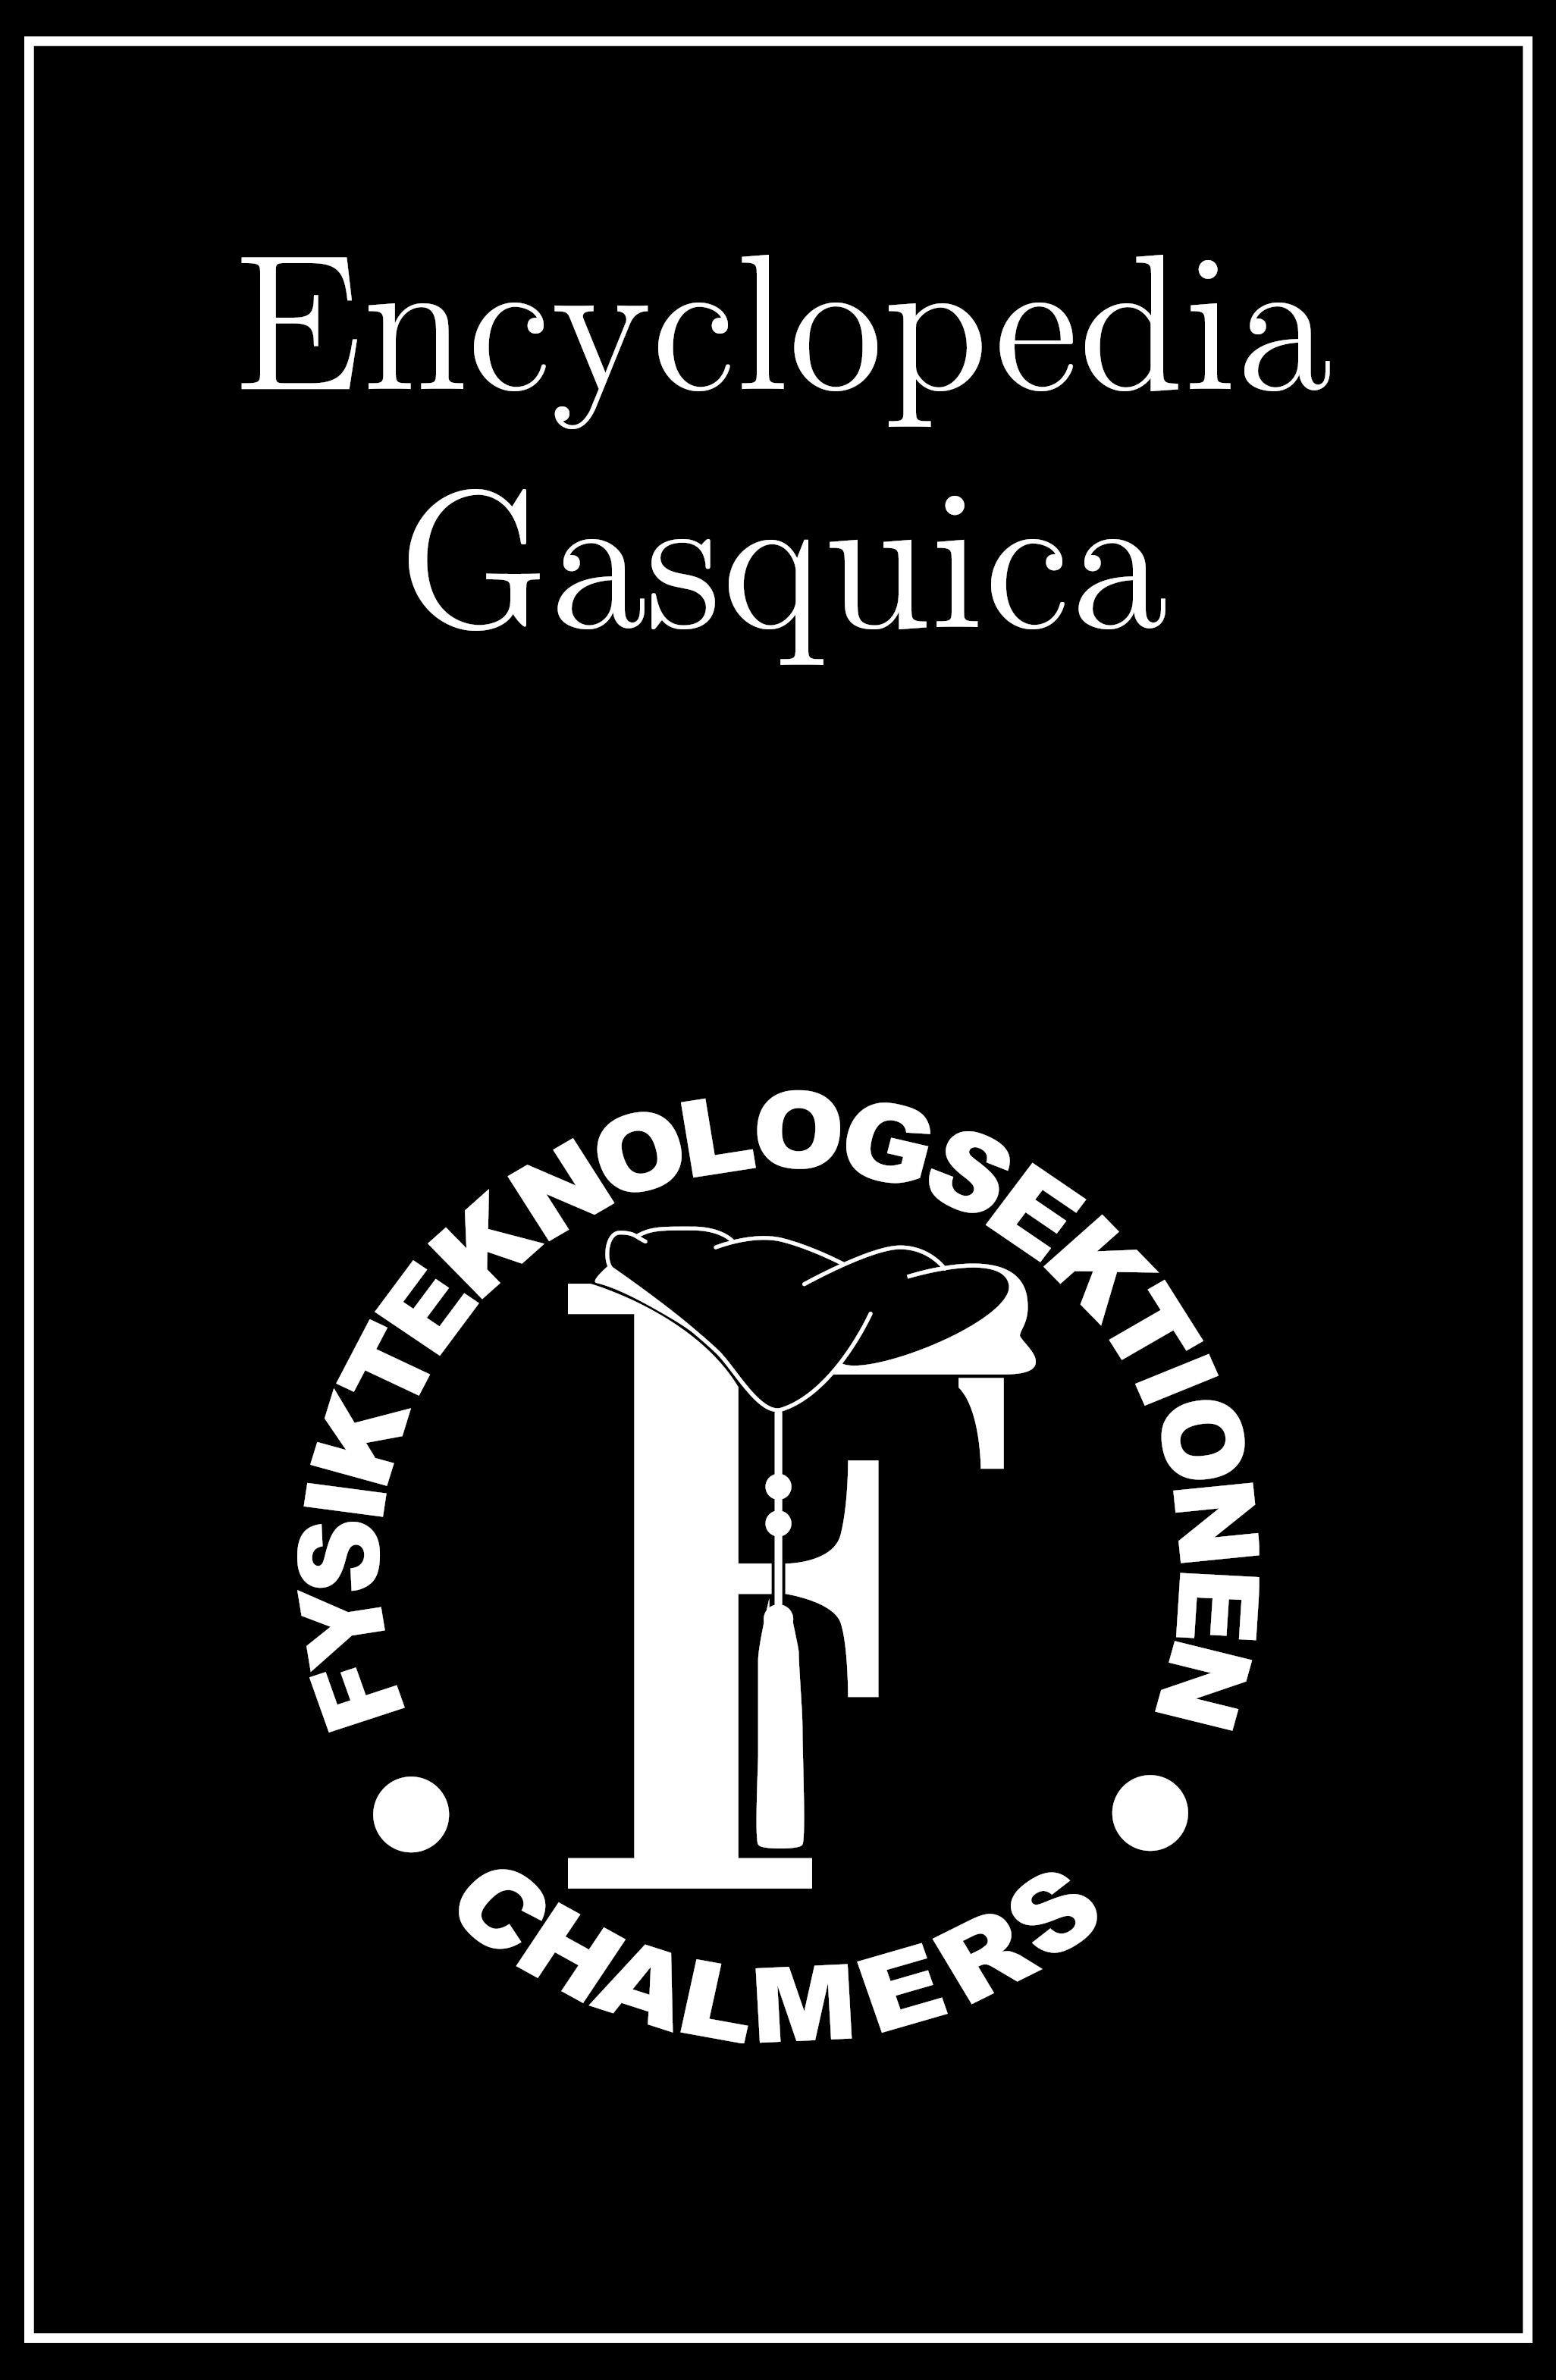 Encyclopedia Gasquica